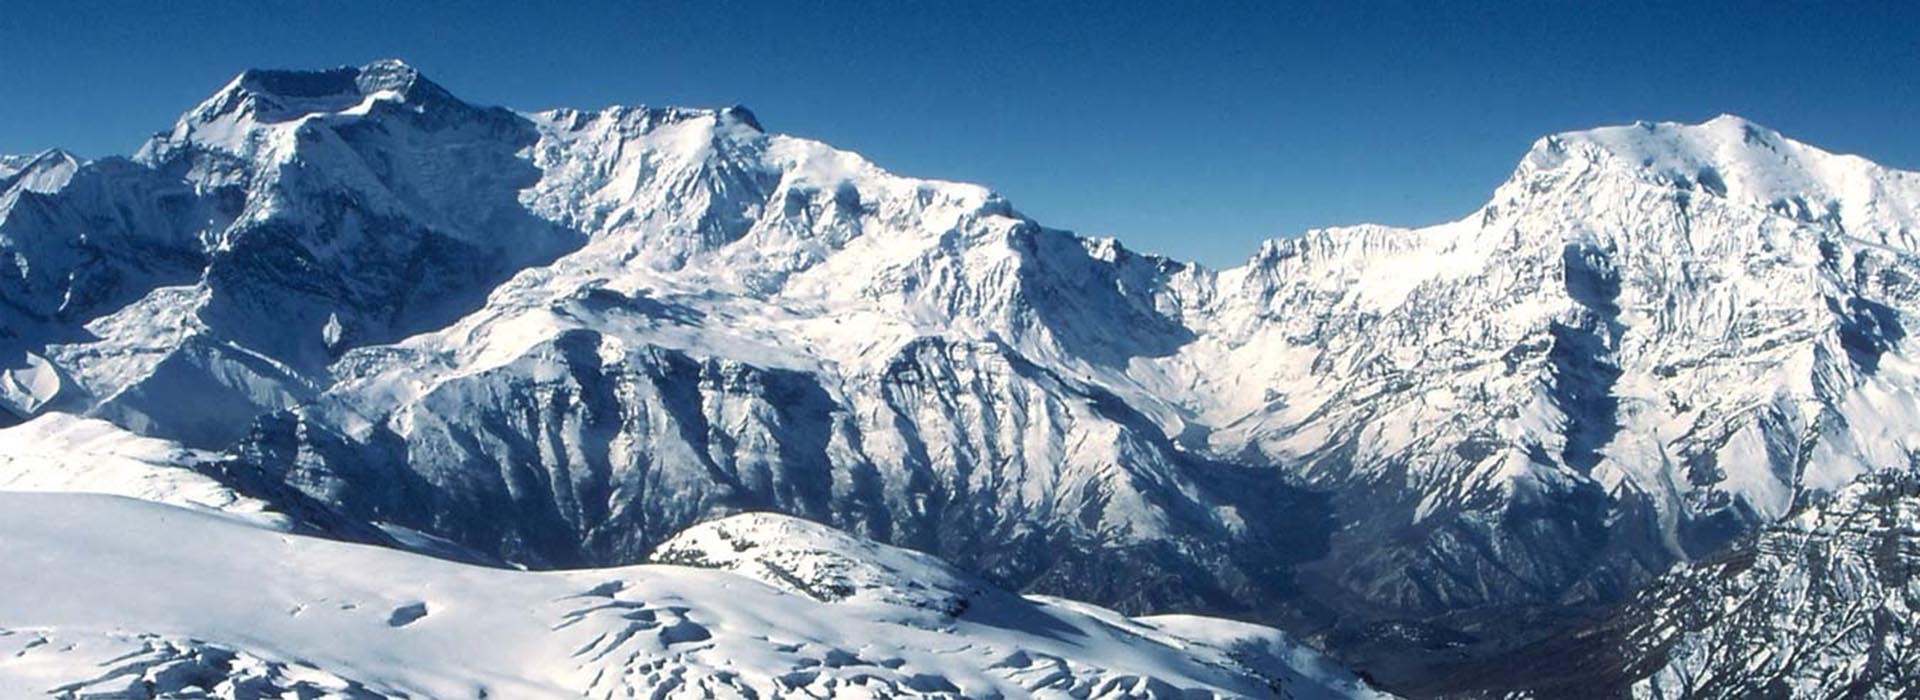 Mount-chulu-peak-climbing